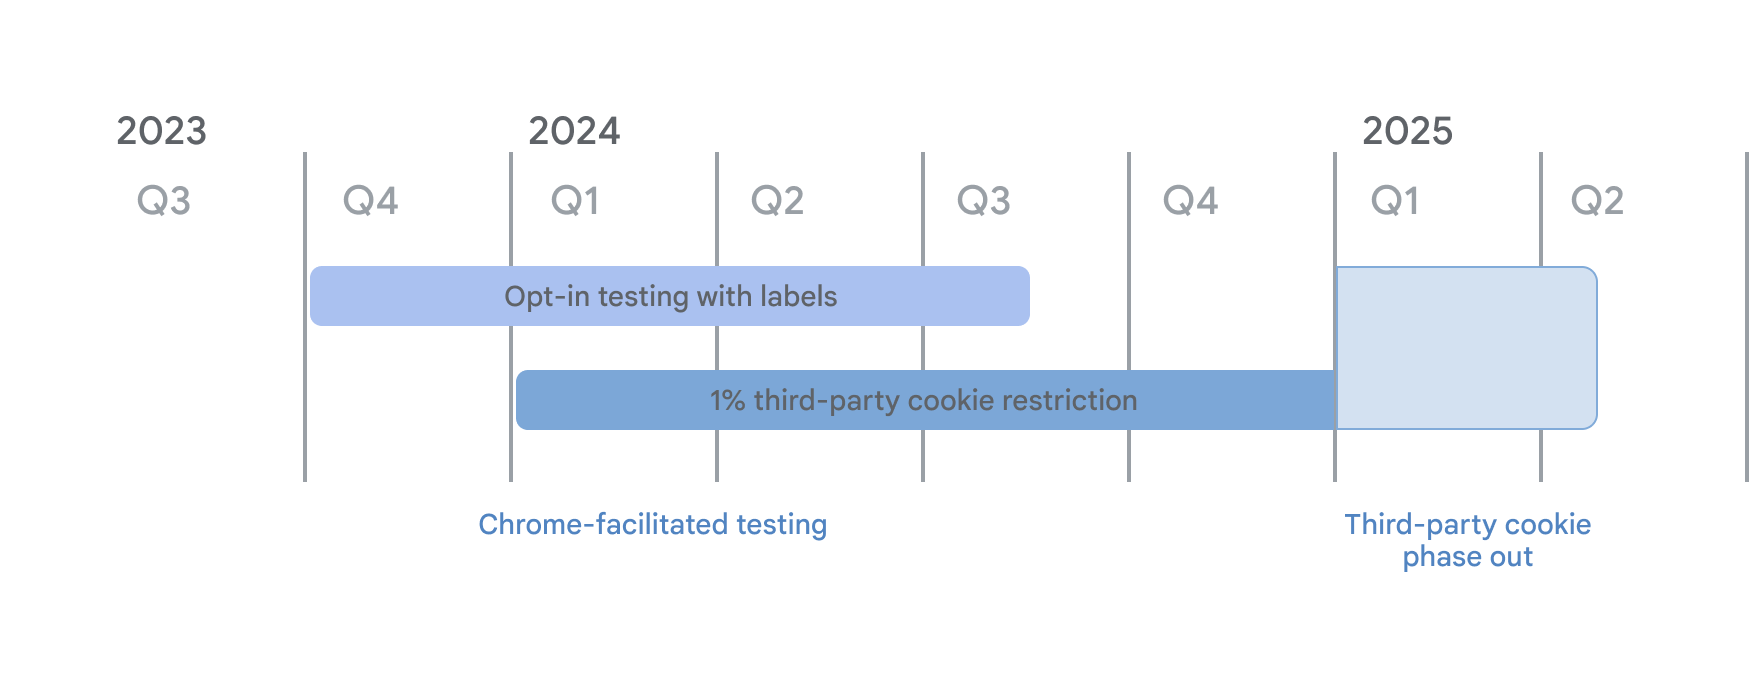 Cronograma de desativação de cookies de terceiros. Como parte dos testes facilitados pelo Chrome, o teste de ativação com o modo de marcadores começou no 4o trimestre de 2023 e passou a aplicar as restrições de 1% dos cookies de terceiros a partir de 4 de janeiro de 2024. Elas vão continuar até o 1o trimestre de 2025, quando a descontinuação dos cookies de terceiros vai começar.